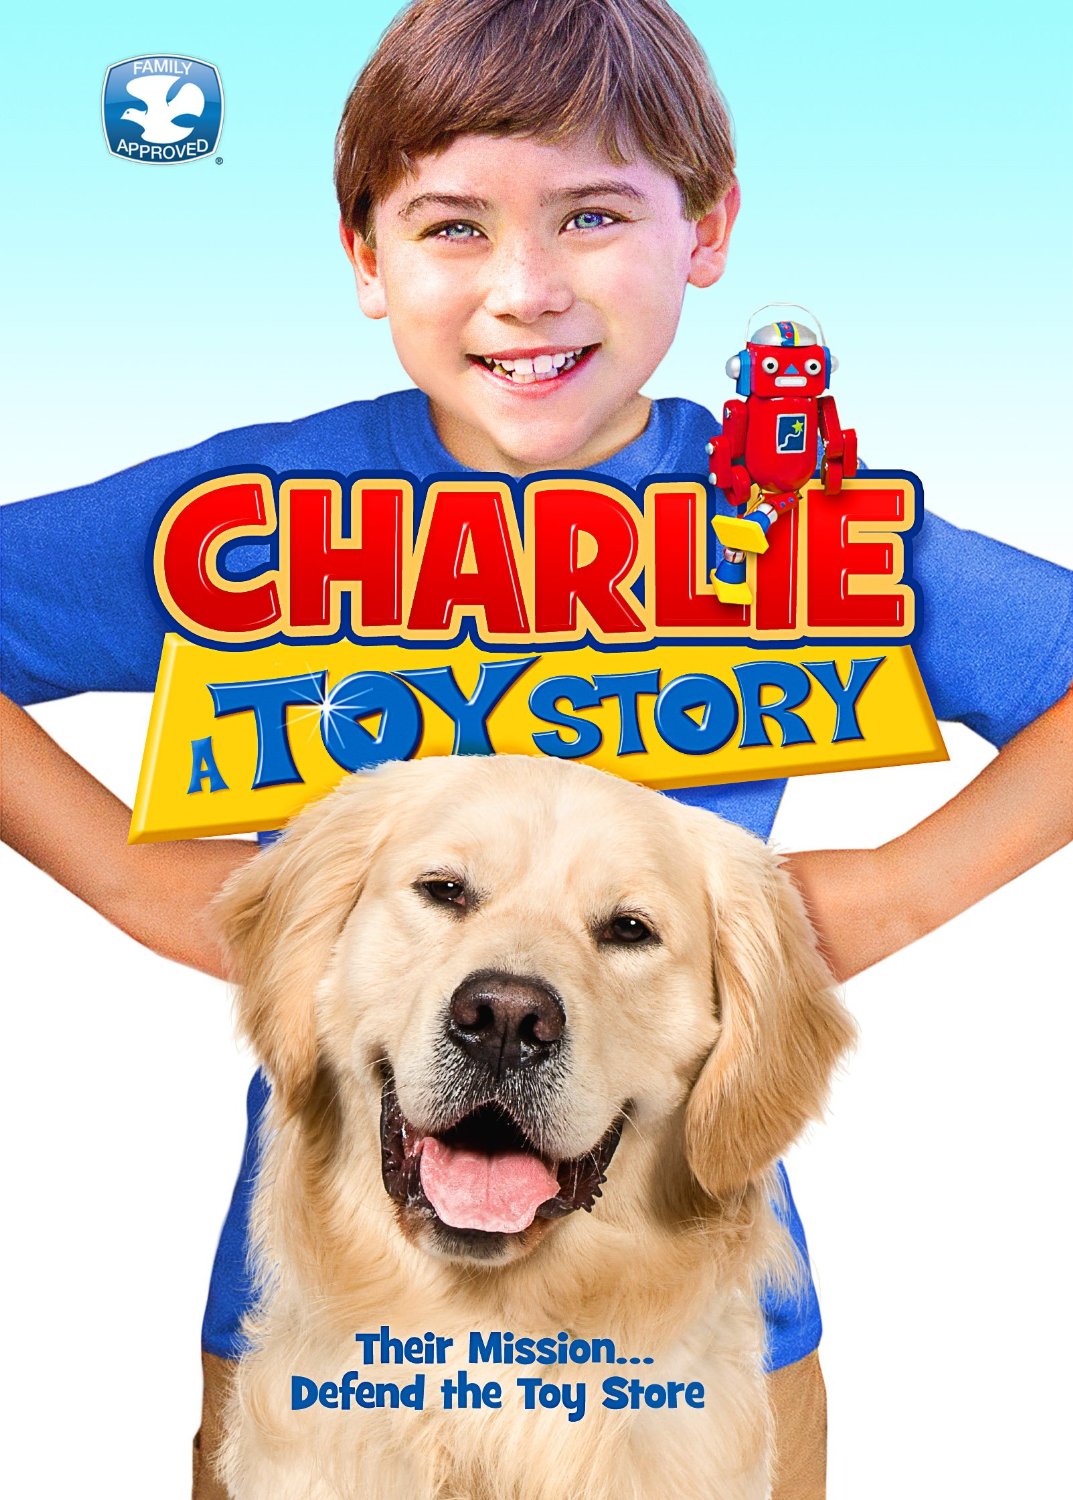 Raymond Ochoa in Charlie:A Toy Story